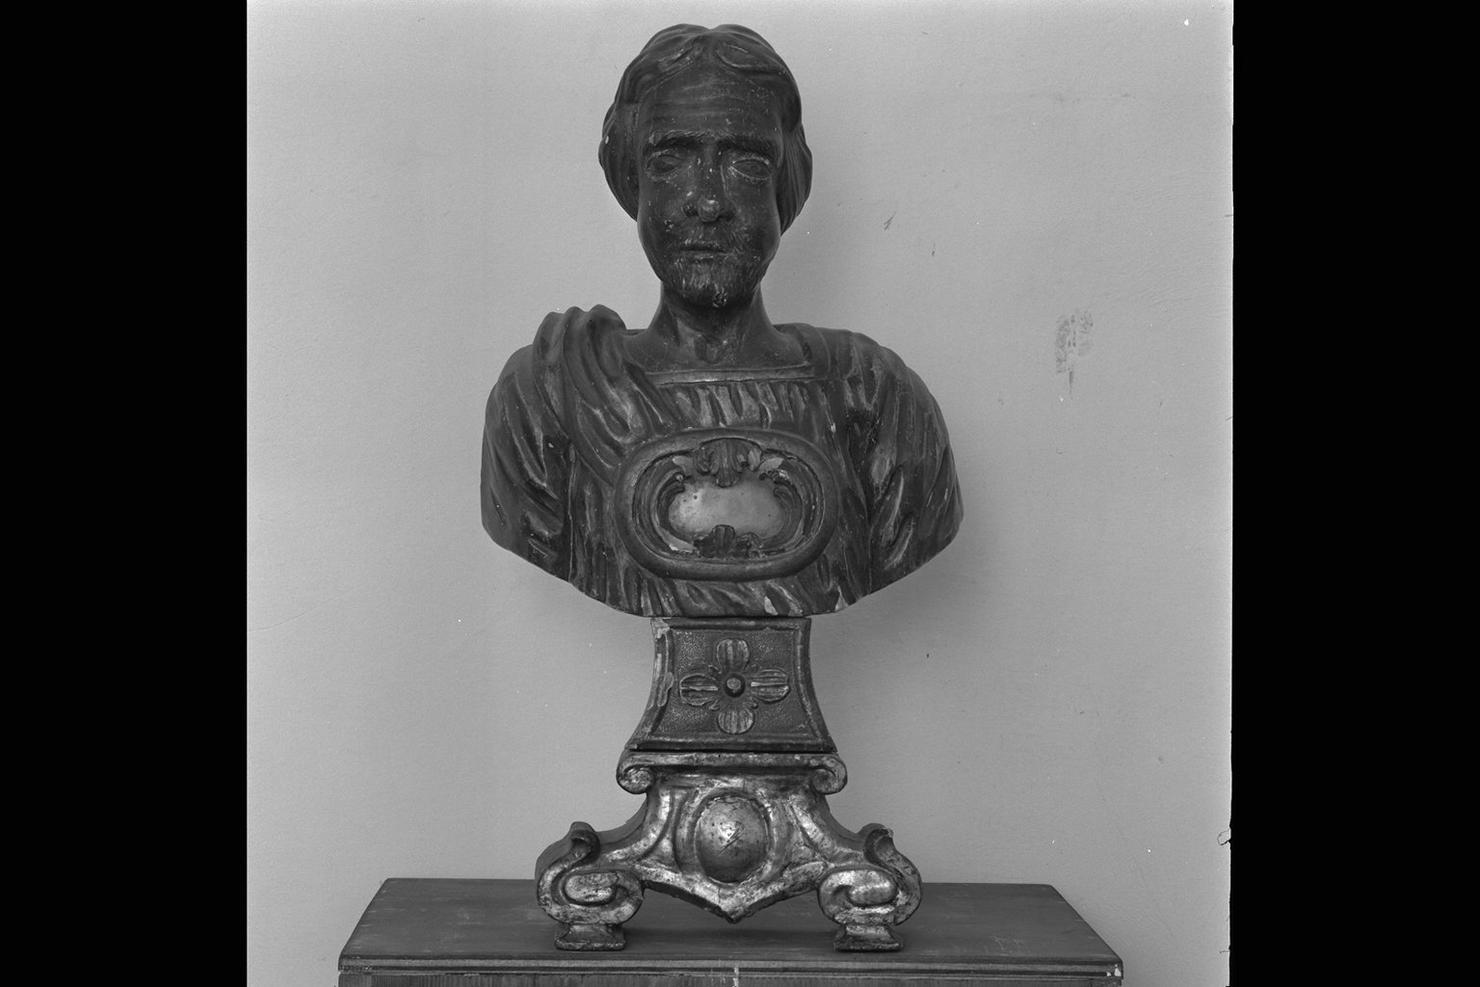 reliquiario - a busto - manifattura marchigiana (secc. XVII/ XVIII)